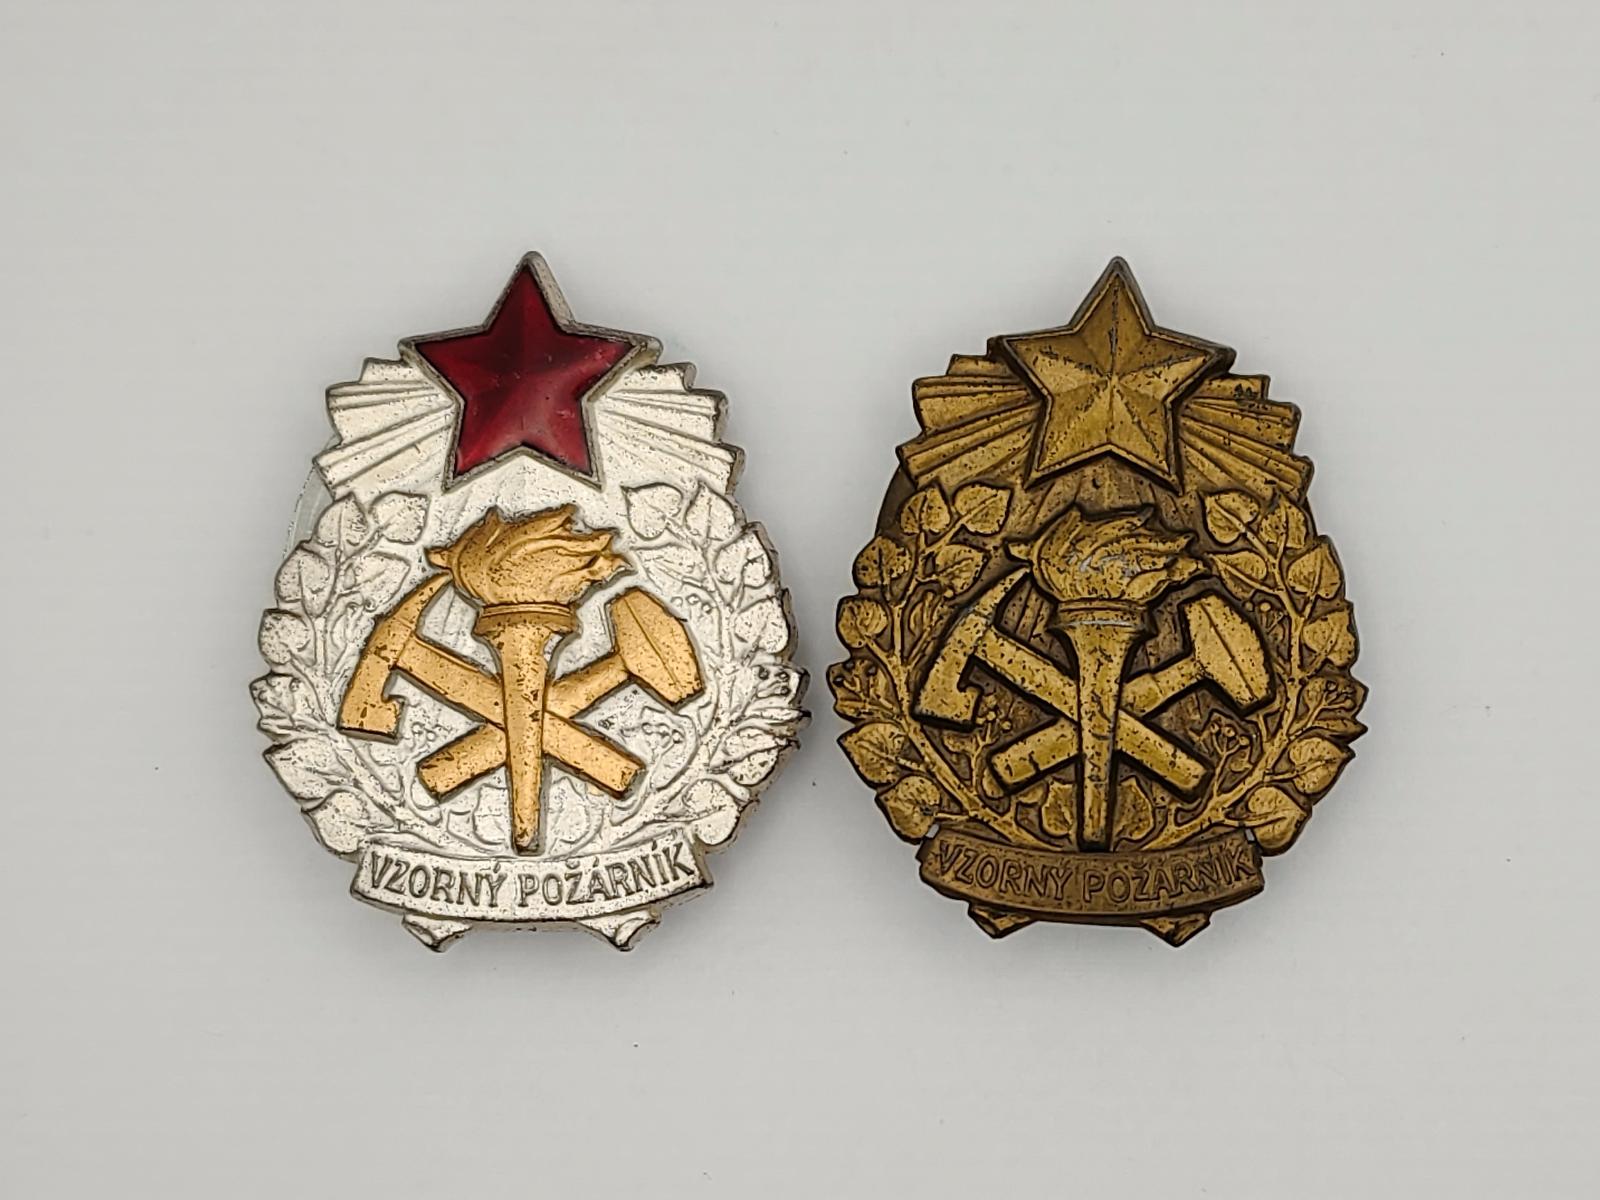 2x Vzorný požiarnik - Odznaky, nášivky a medaily